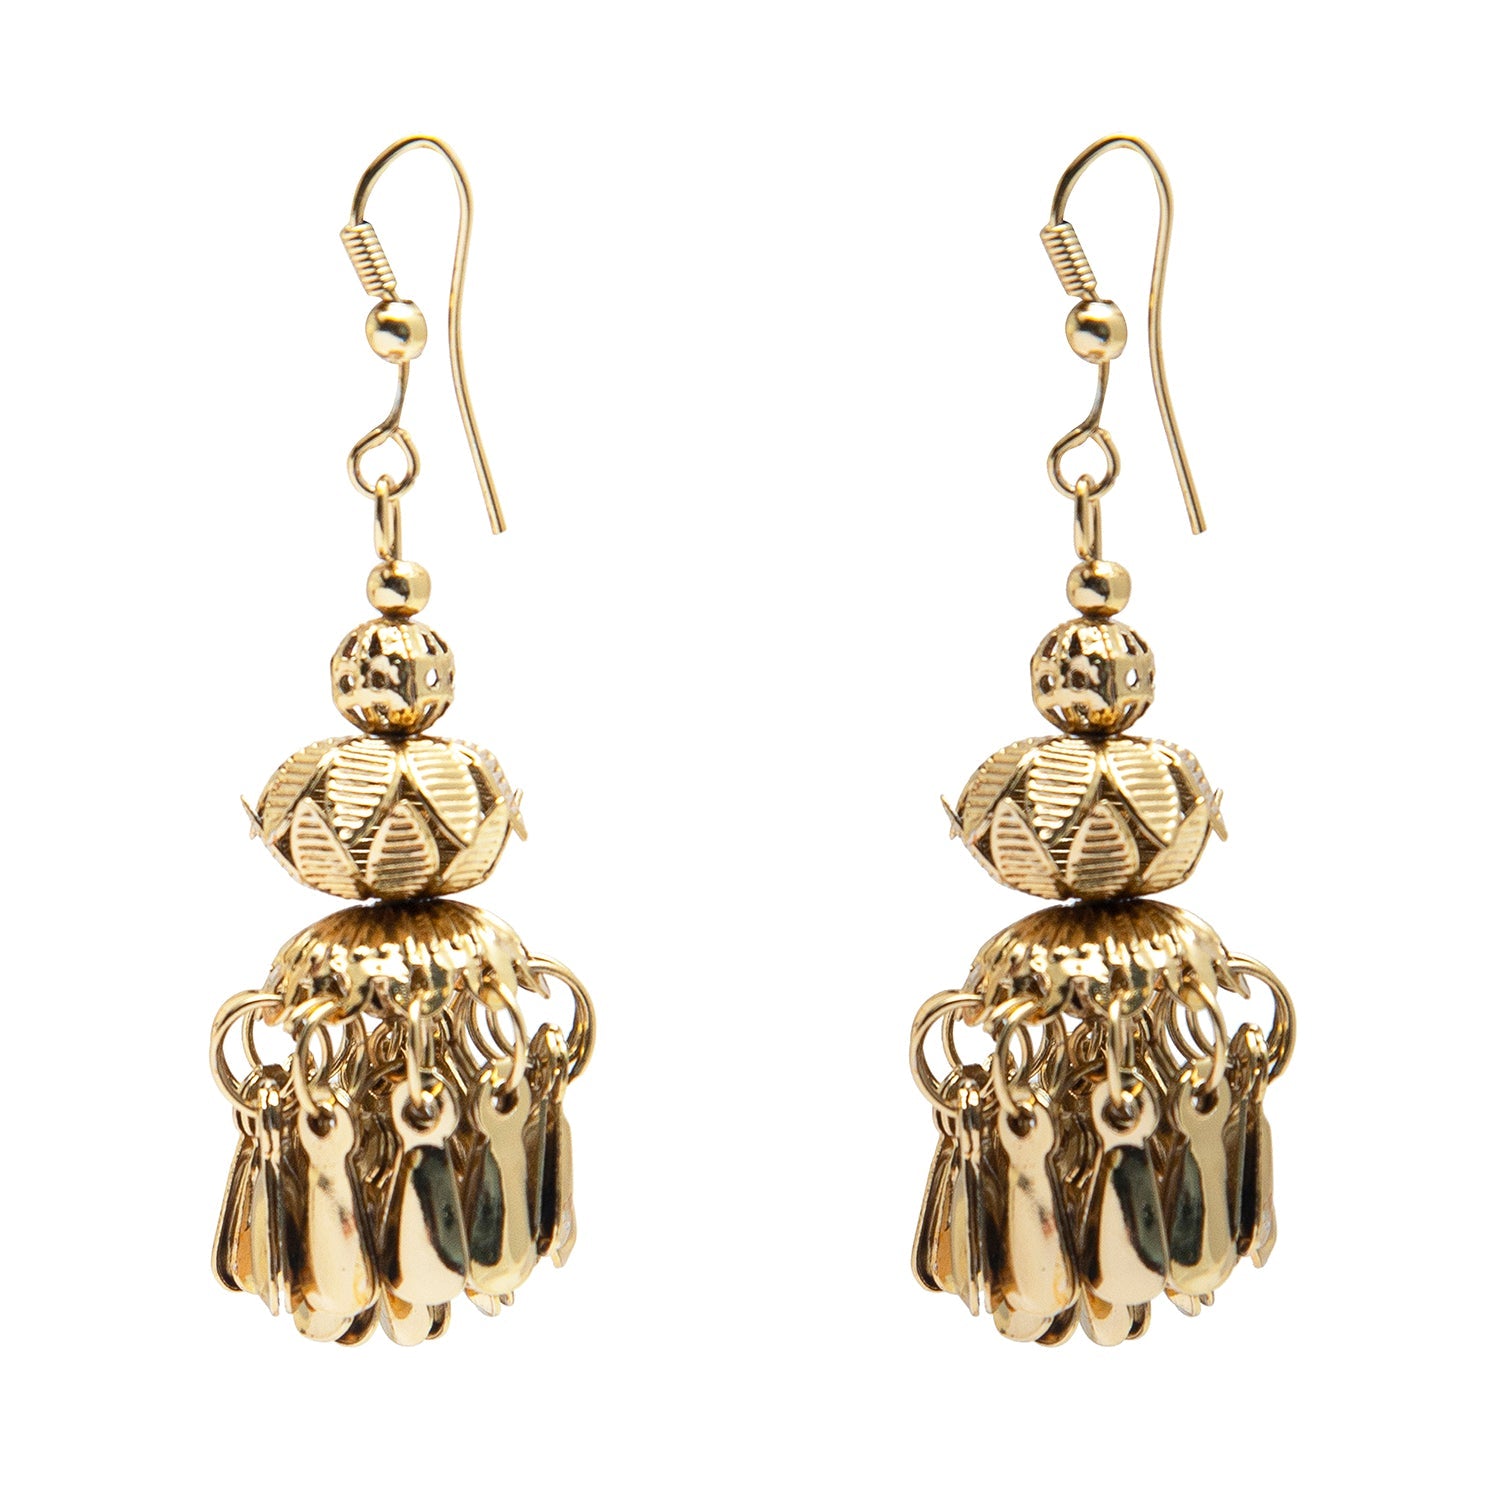 Boho Small Jhumkas Earrings/oxidized Golden Jhumka/earrings for  Women/handmade Earrings/tribal Earrings/gifts for Her - Etsy